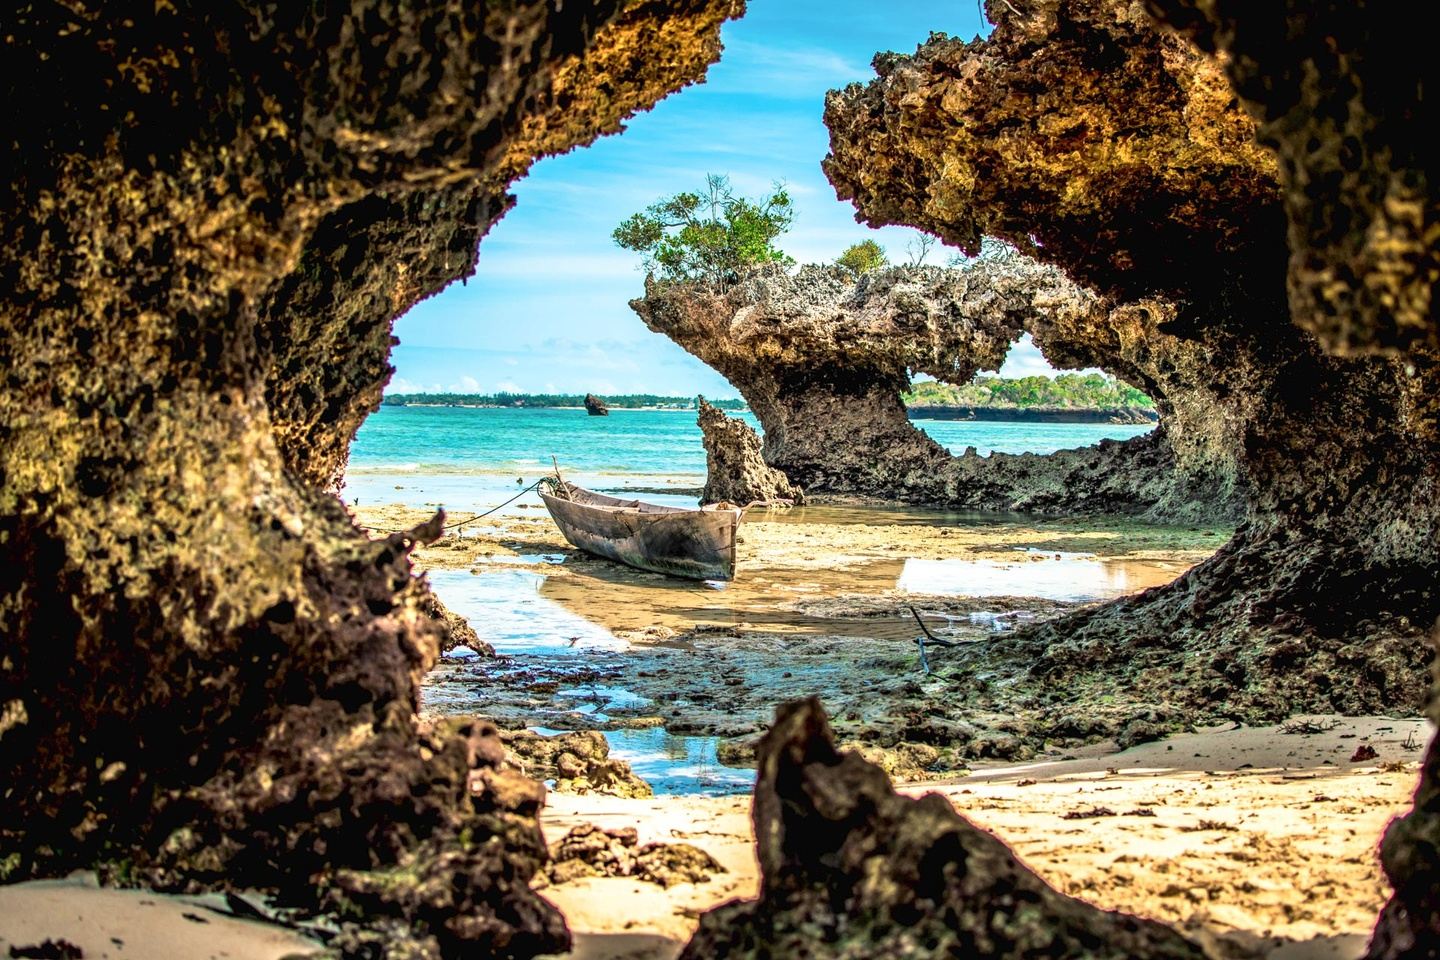 Explore Zanzibar (8-Day Itinerary)